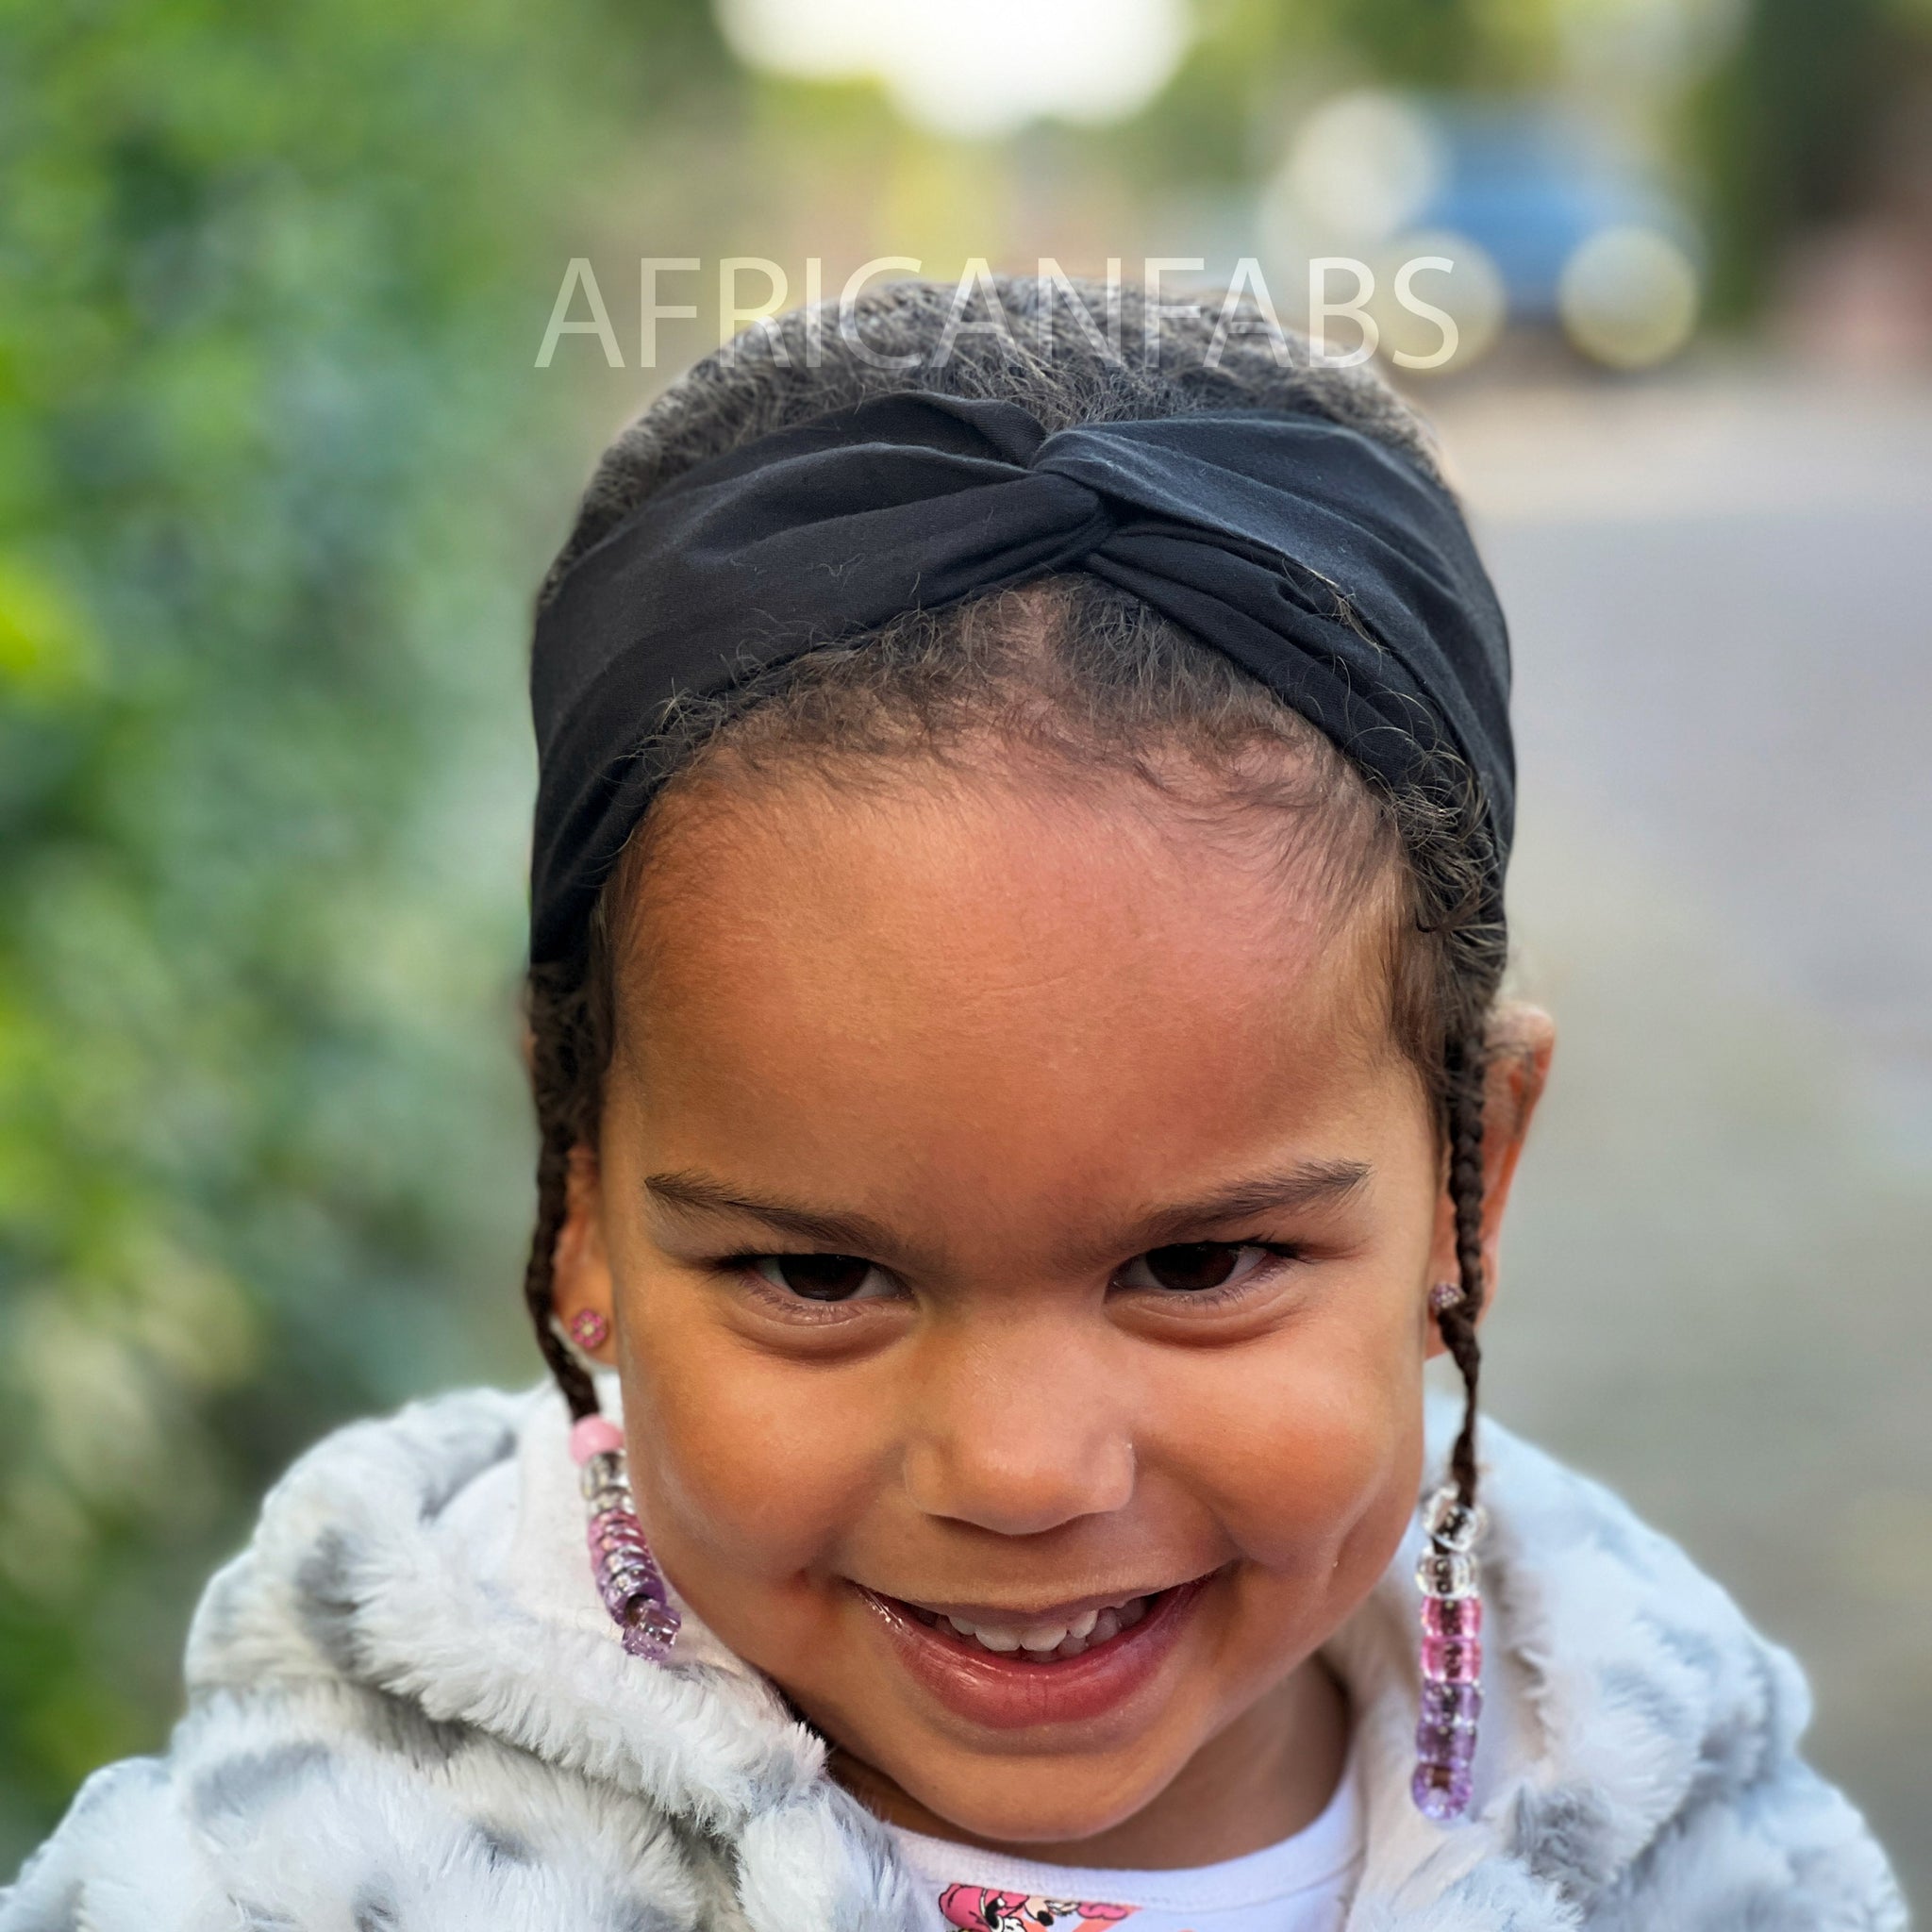 Haarband / Stirnband / Kopfband für Kinder in Afrikanischer Print - Schwarz